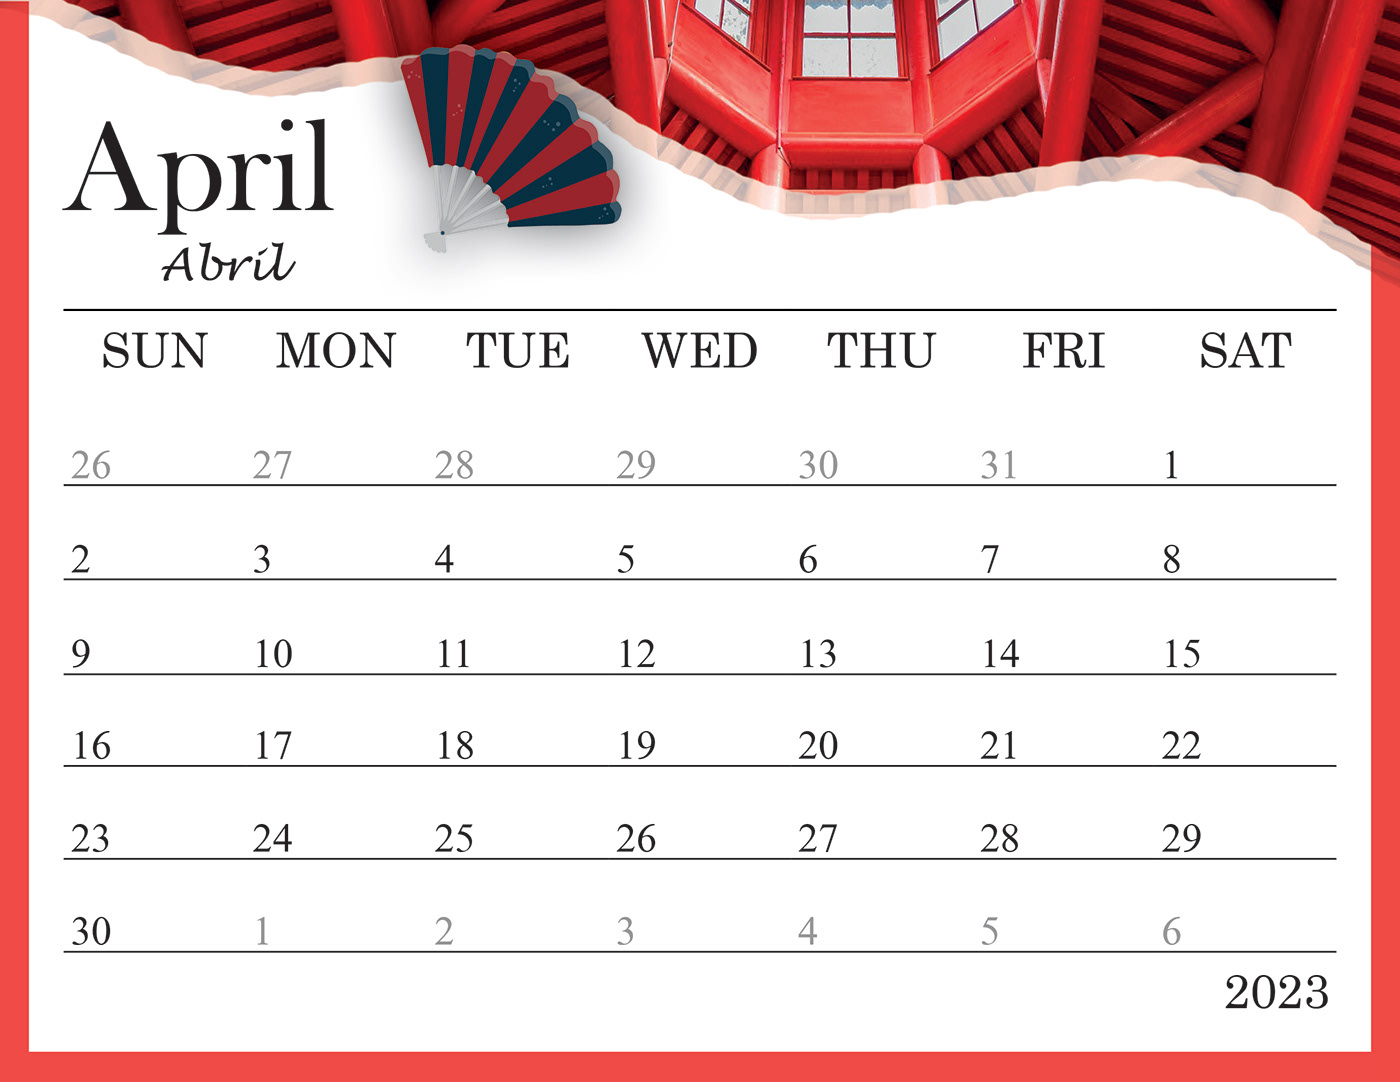 time timetable design calendar red 2023 design 2023 calendar calendario